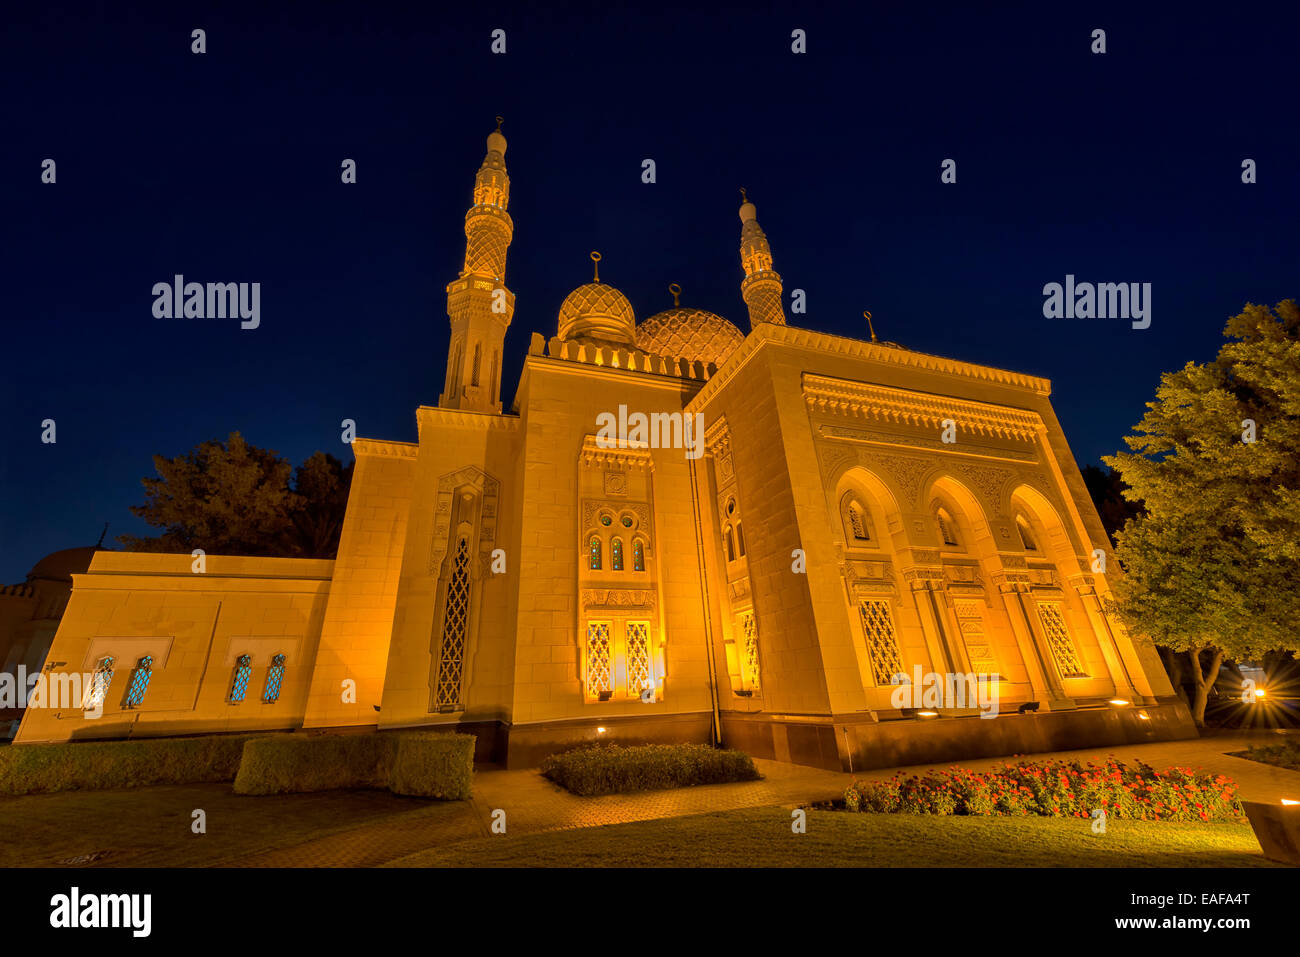 Jumeirah Mosque in Dubai, UAE Stock Photo